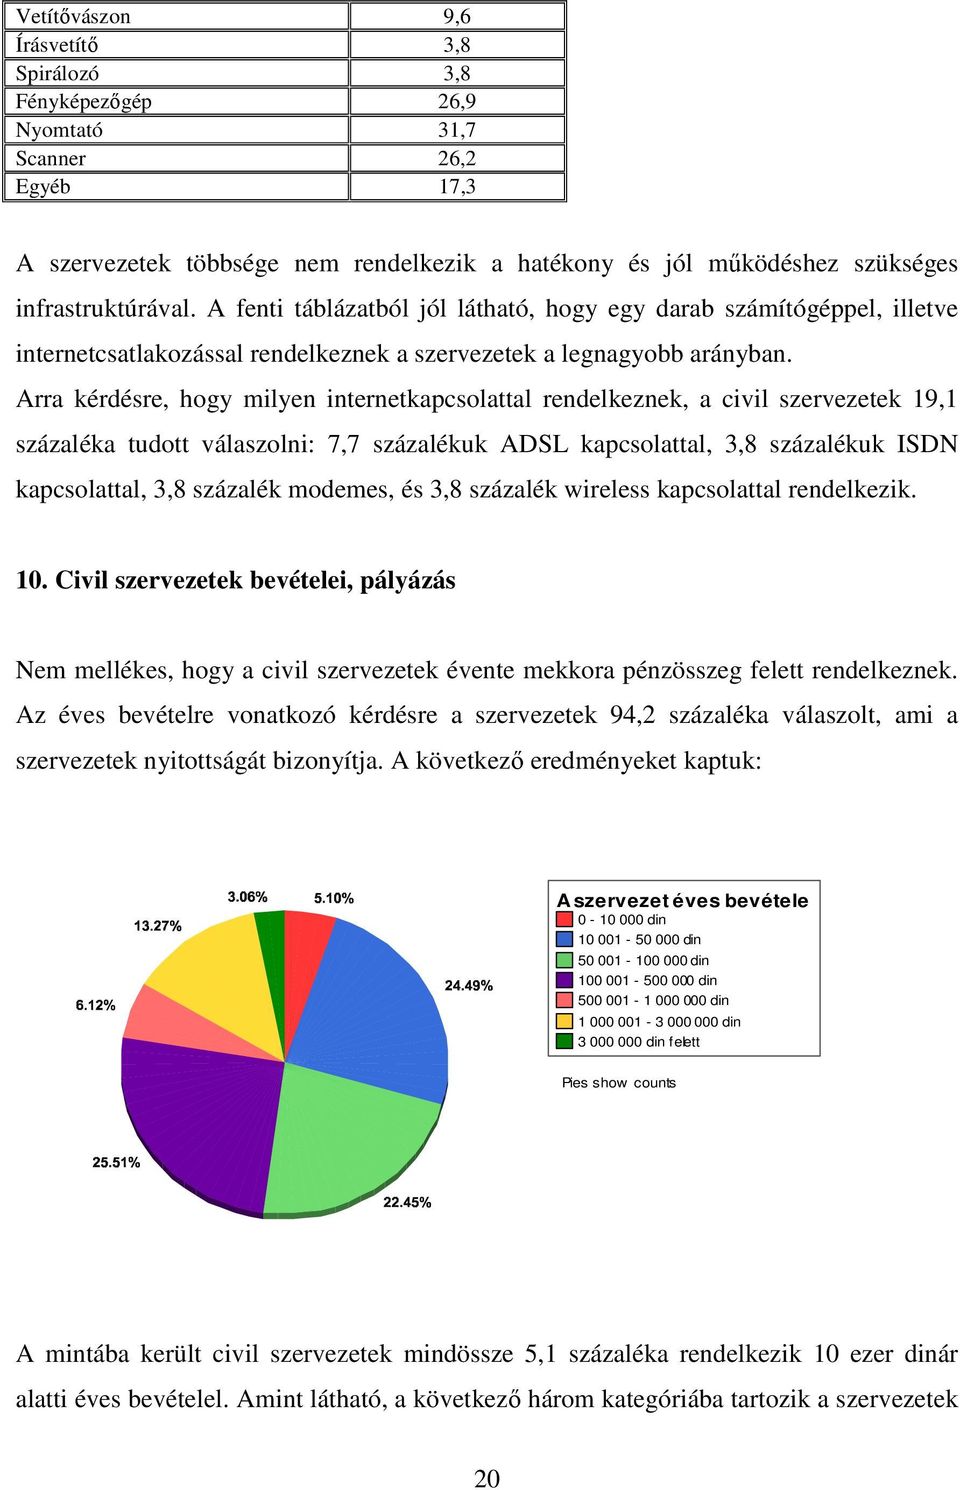 Arra kérdésre, hogy milyen internetkapcsolattal rendelkeznek, a civil szervezetek 19,1 százaléka tudott válaszolni: 7,7 százalékuk ADSL kapcsolattal, 3,8 százalékuk ISDN kapcsolattal, 3,8 százalék